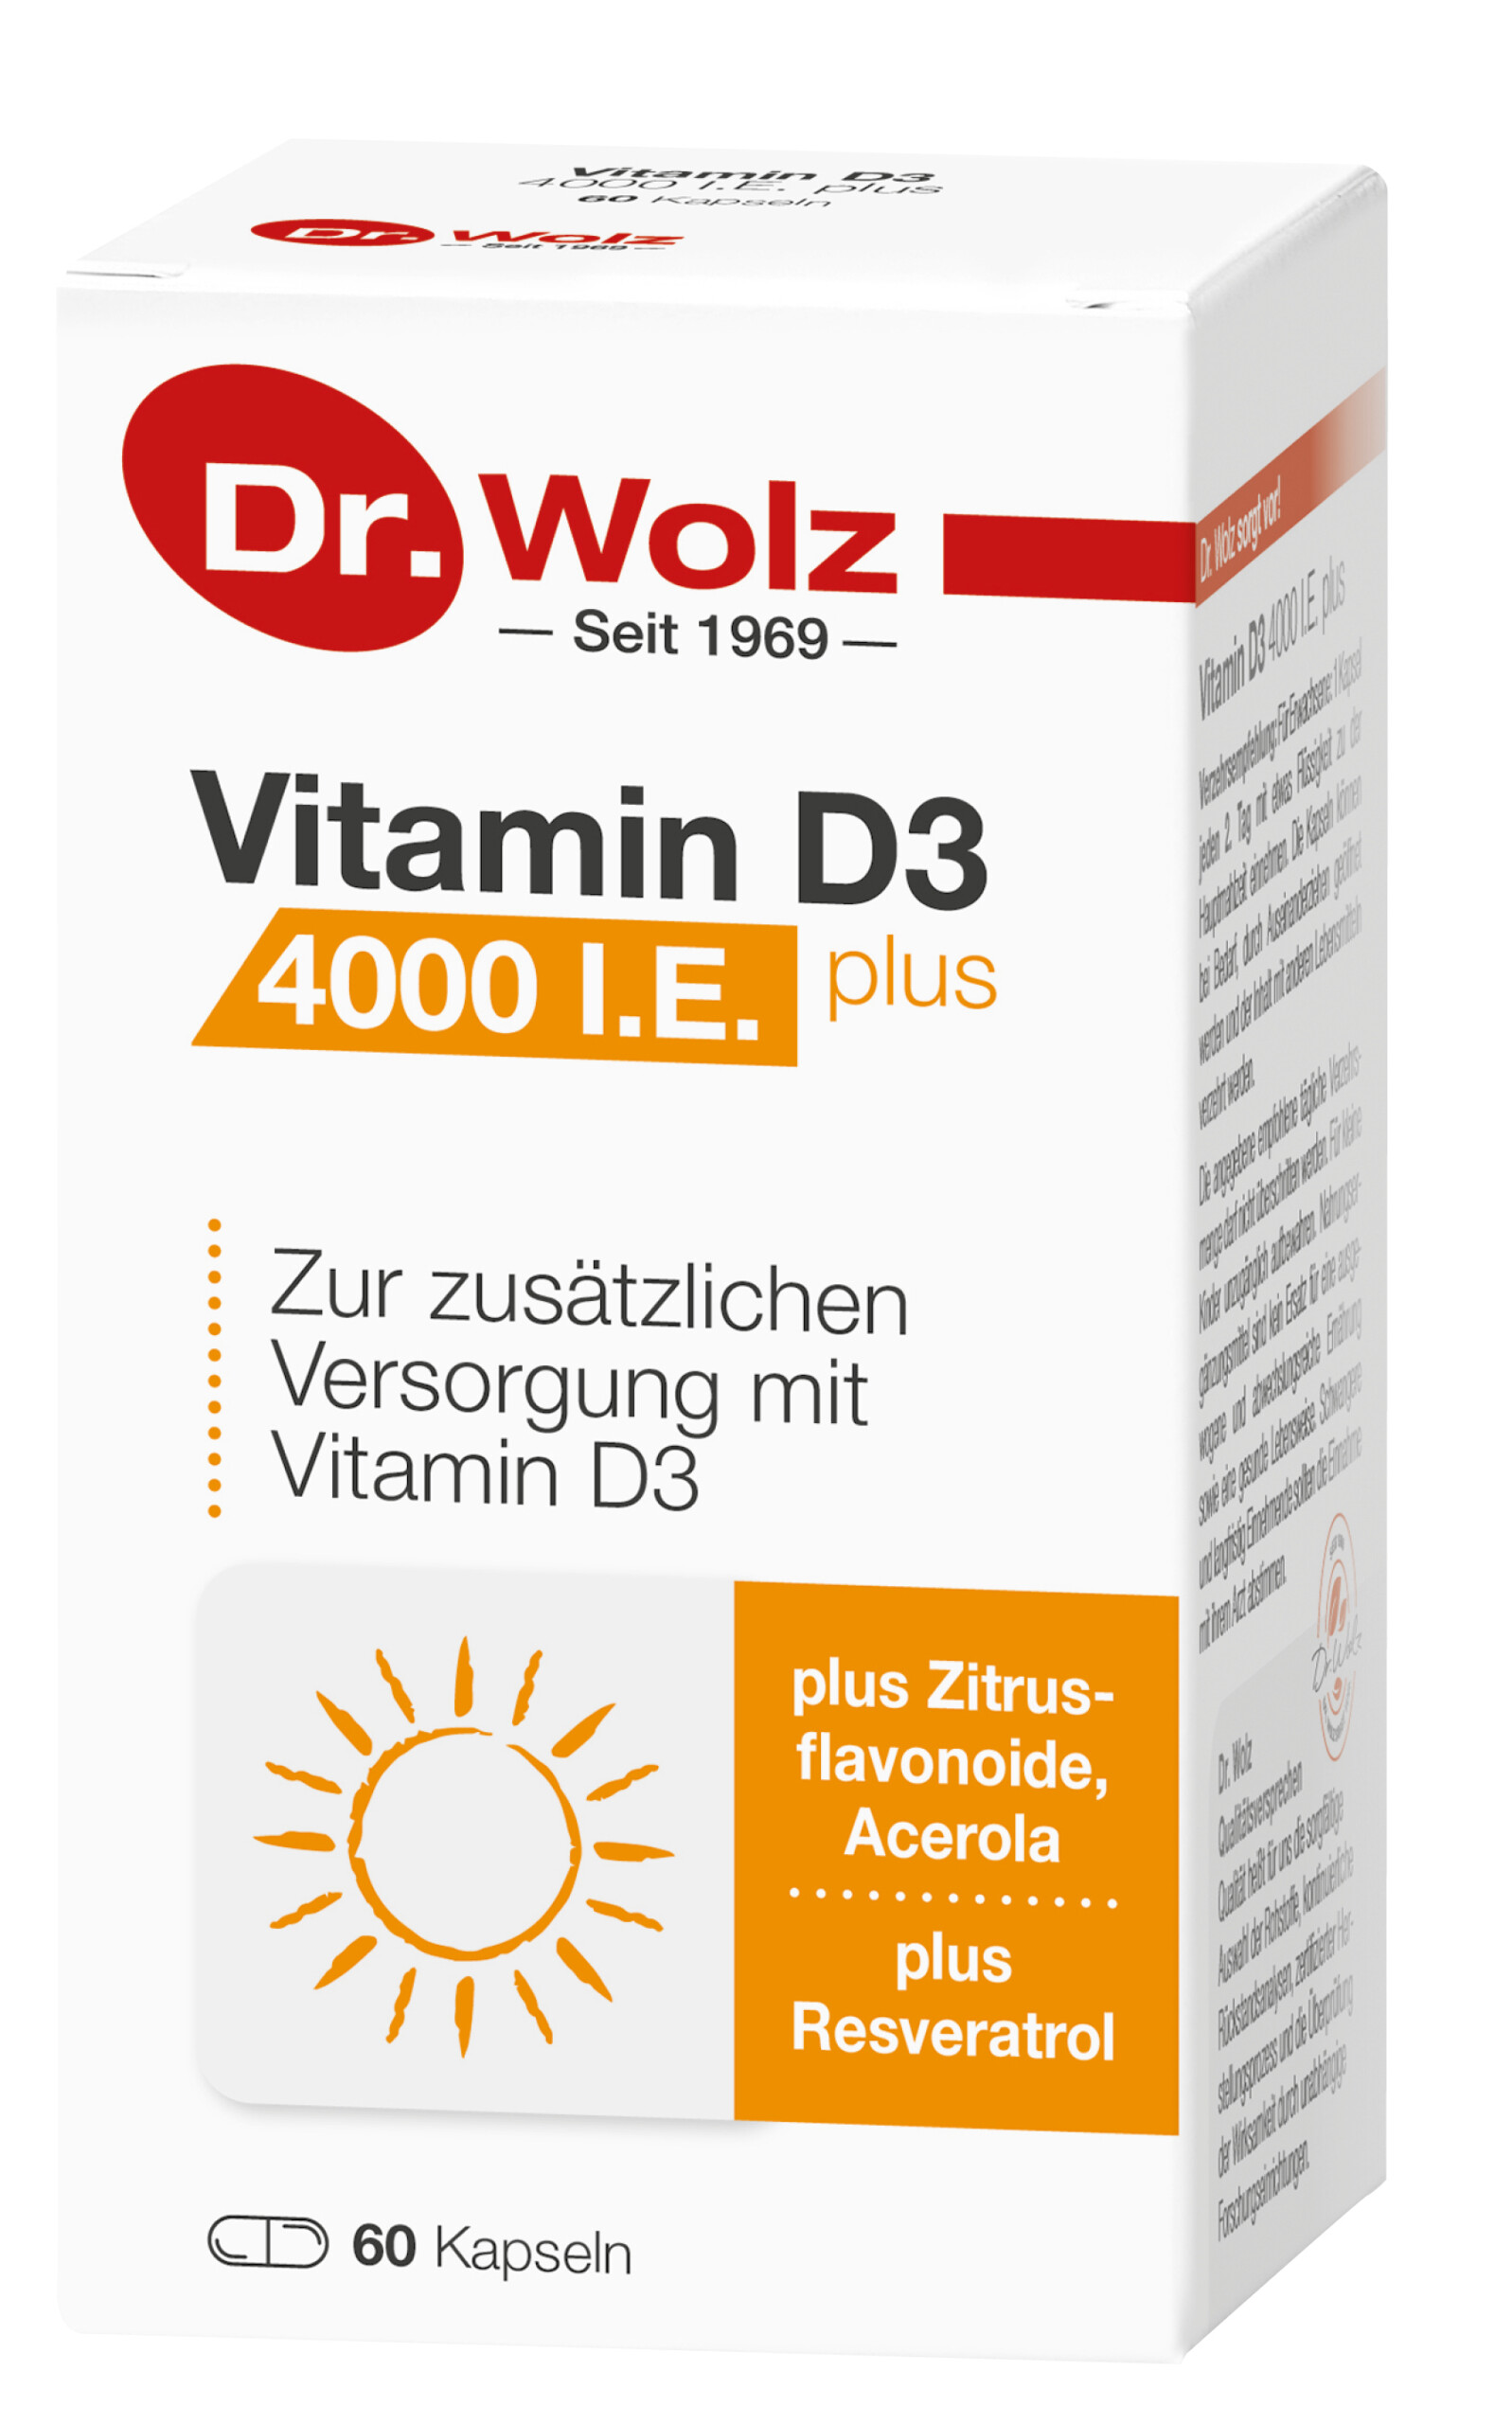 Foto der AMM-Produktempfehlung "Vitamin D3 4000 I.E. Plus" von Dr. Wolz